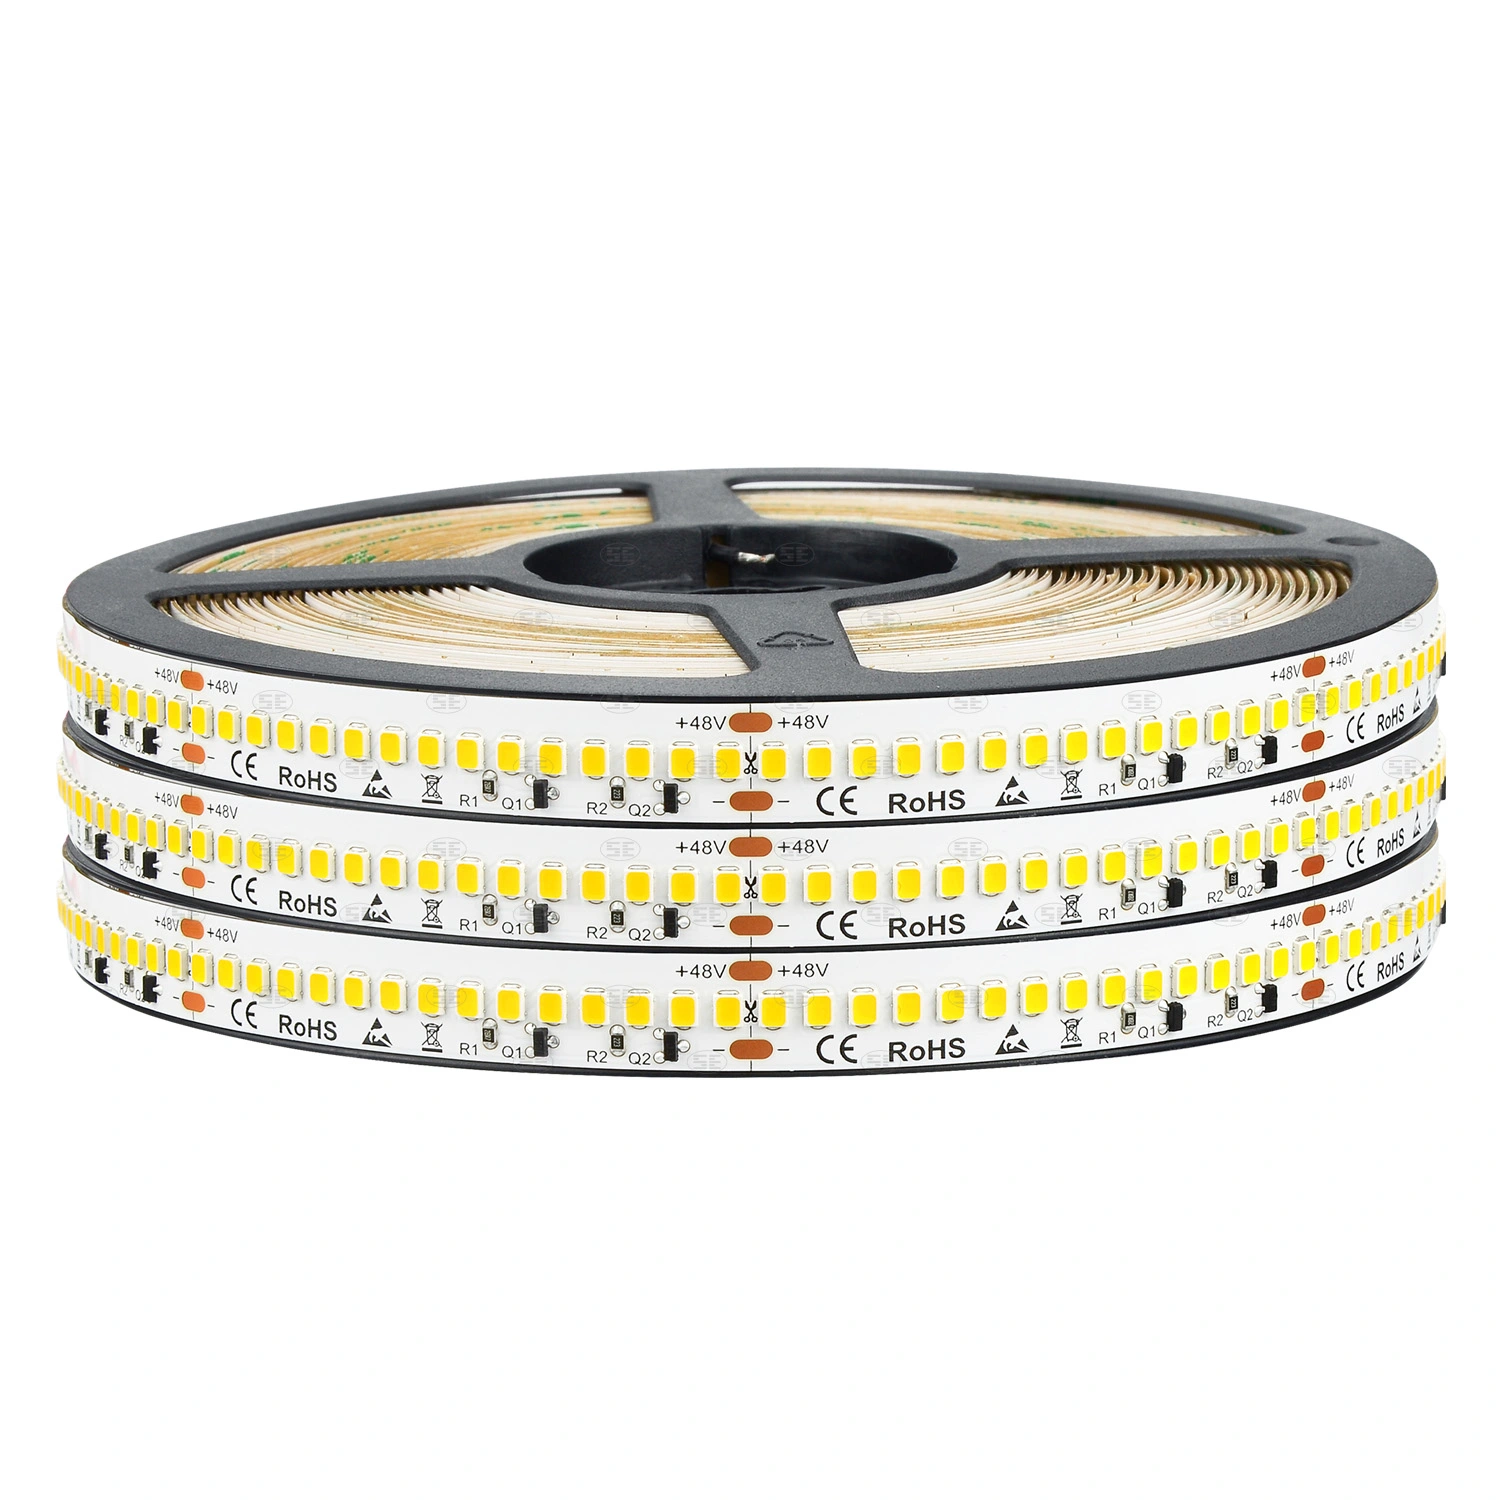 Waterproof LED Strip Lights Constant Current 240LEDs 48V